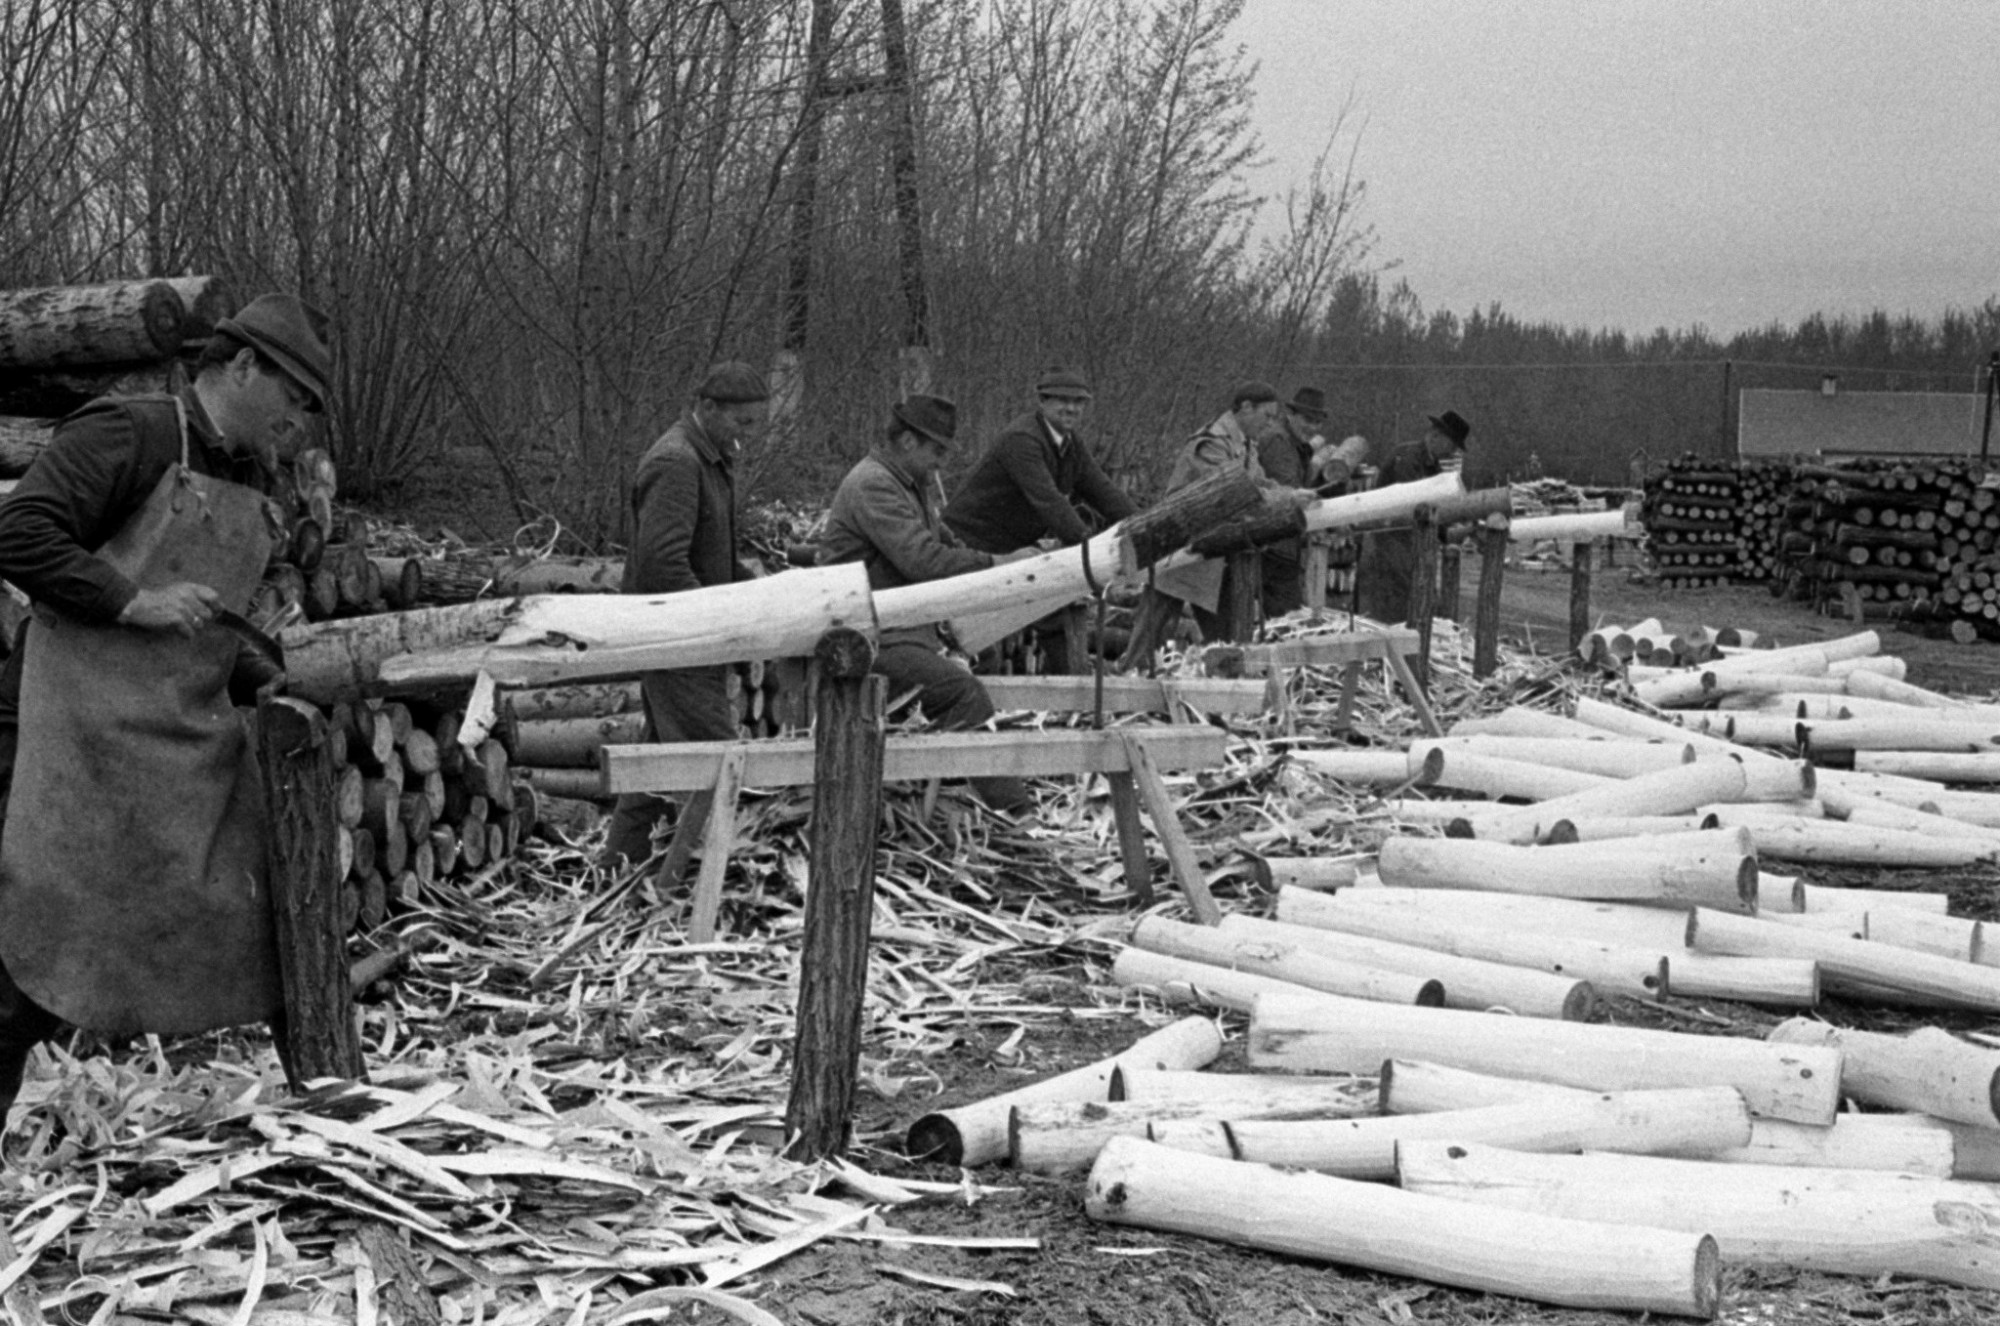 A Nagykunsági Állami Erdőgazdaság fagyártmány üzeme Mikebudán 1970-ben.